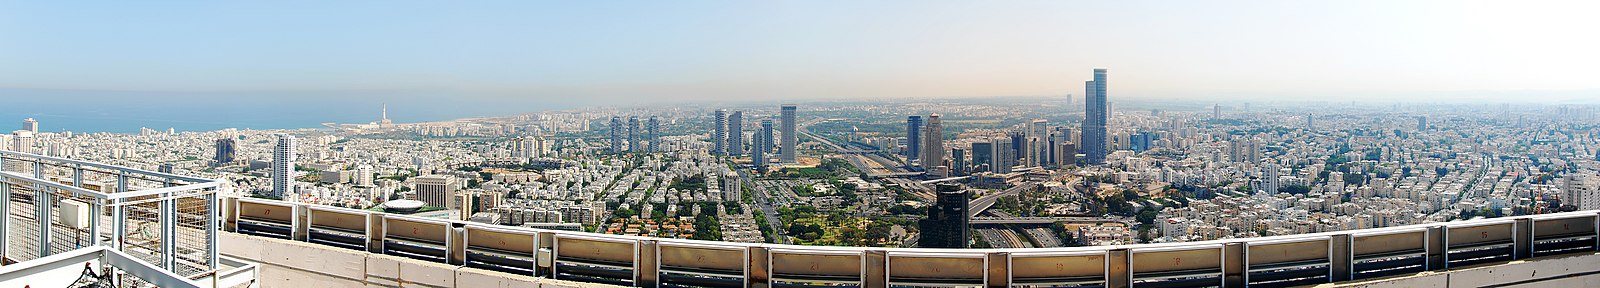 מבט ממגדל עזריאלי העגול לכיוון תל אביב ורמת גן